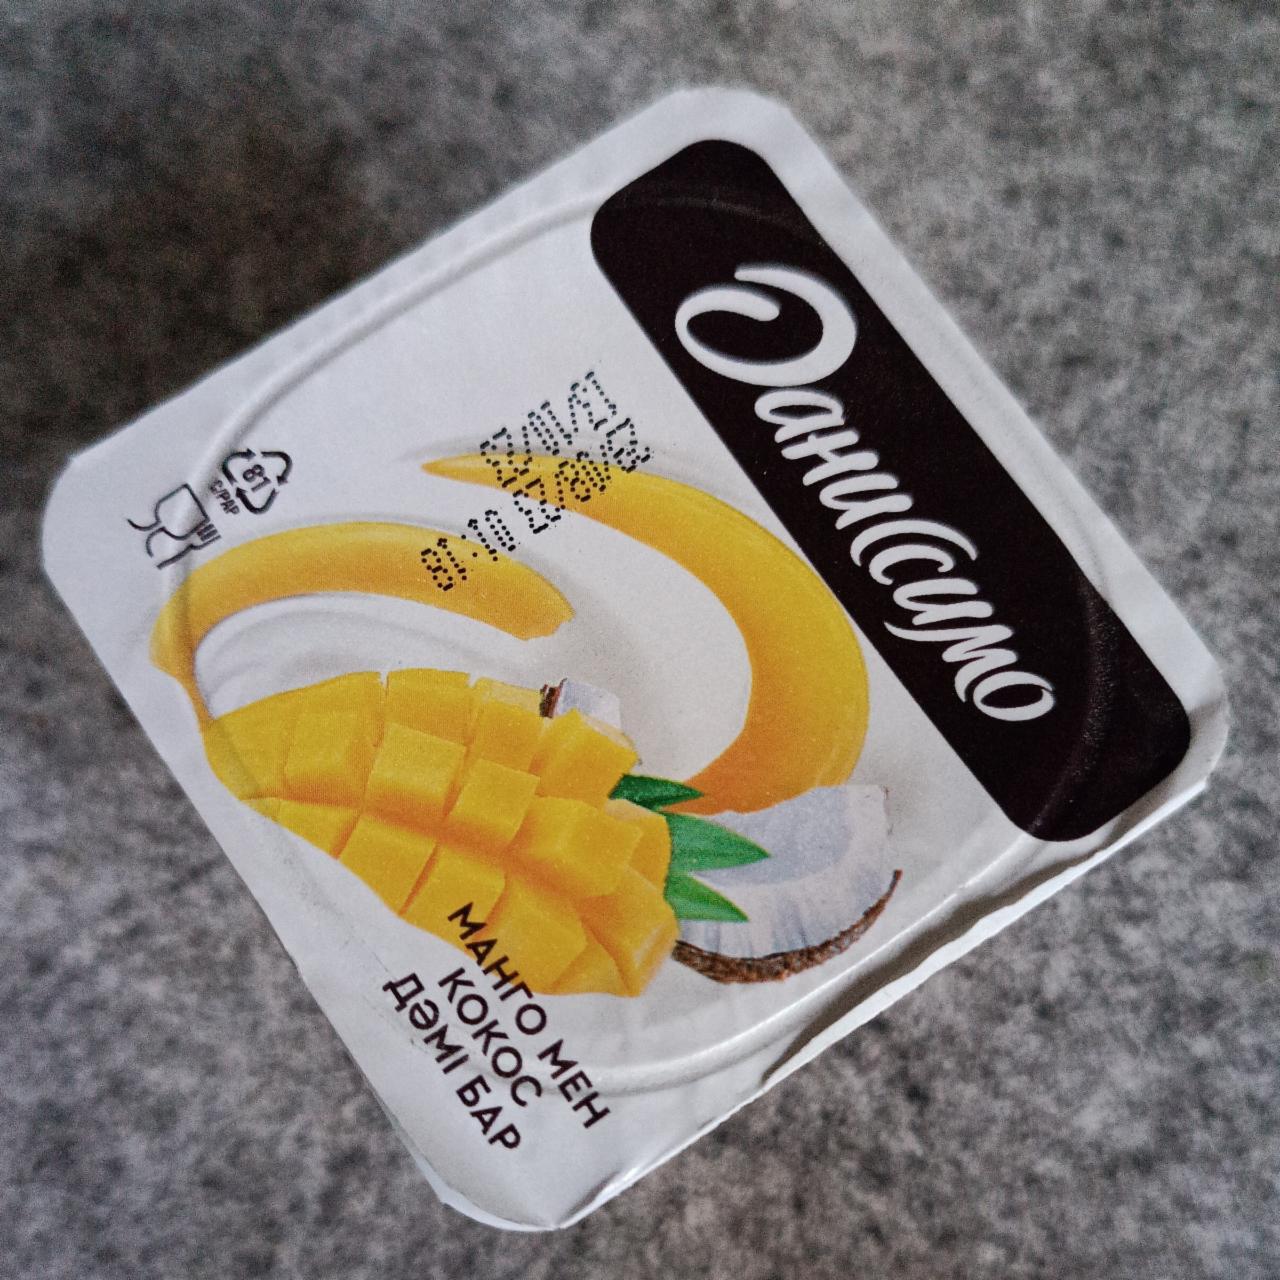 Фото - йогурт со вкусом манго и кокоса Даниссимо